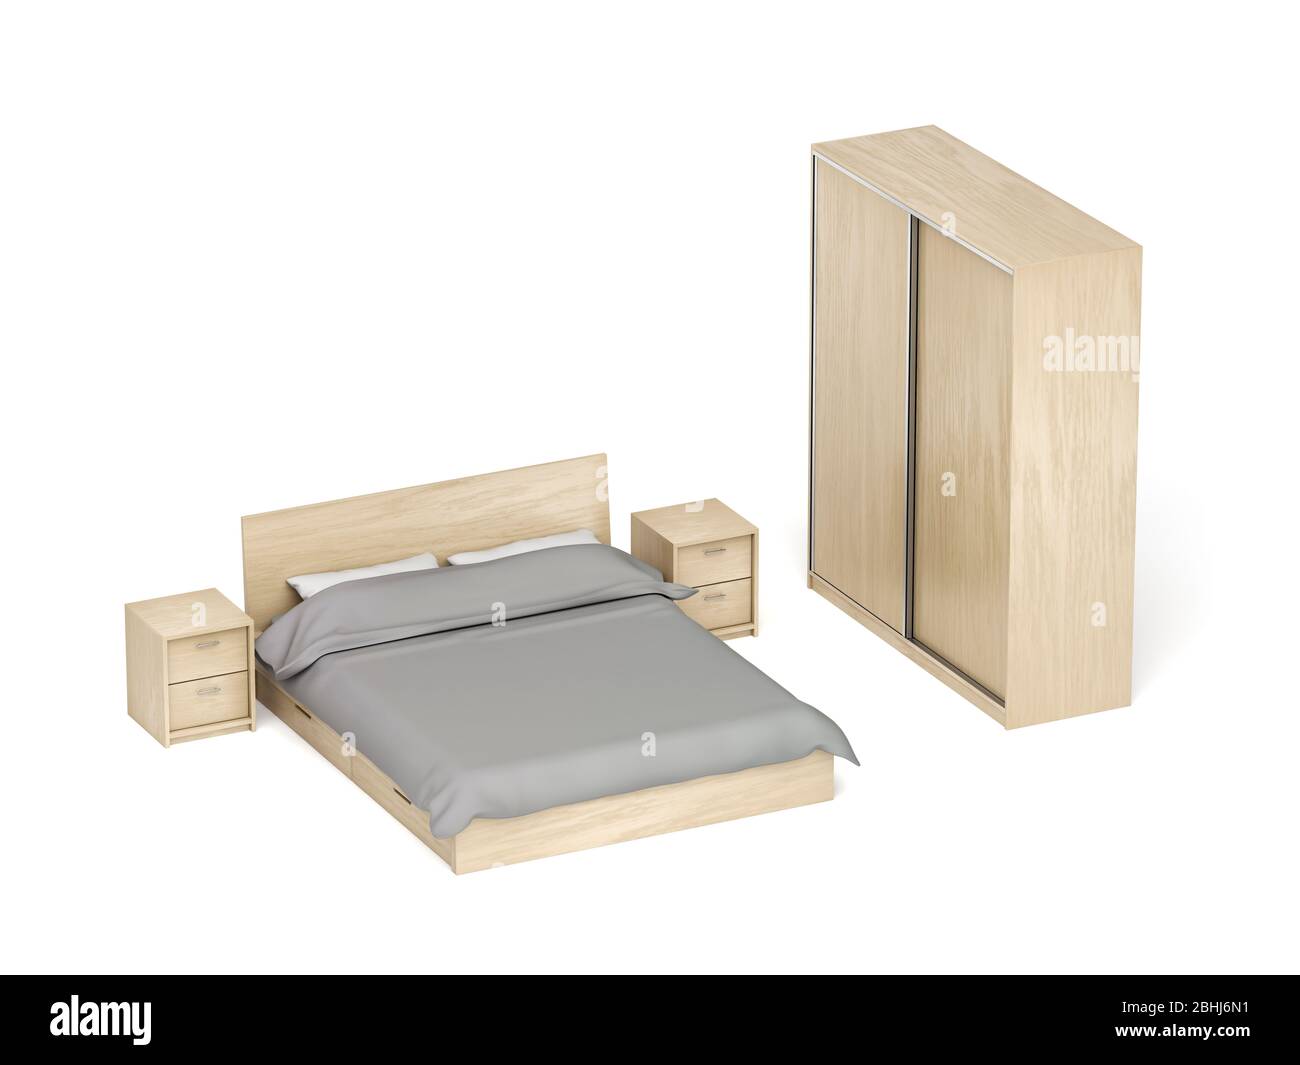 Holzmöbel für Schlafzimmer auf weißem Hintergrund. Bett, Nachttische und  Kleiderschrank mit Schiebetisch Stockfotografie - Alamy